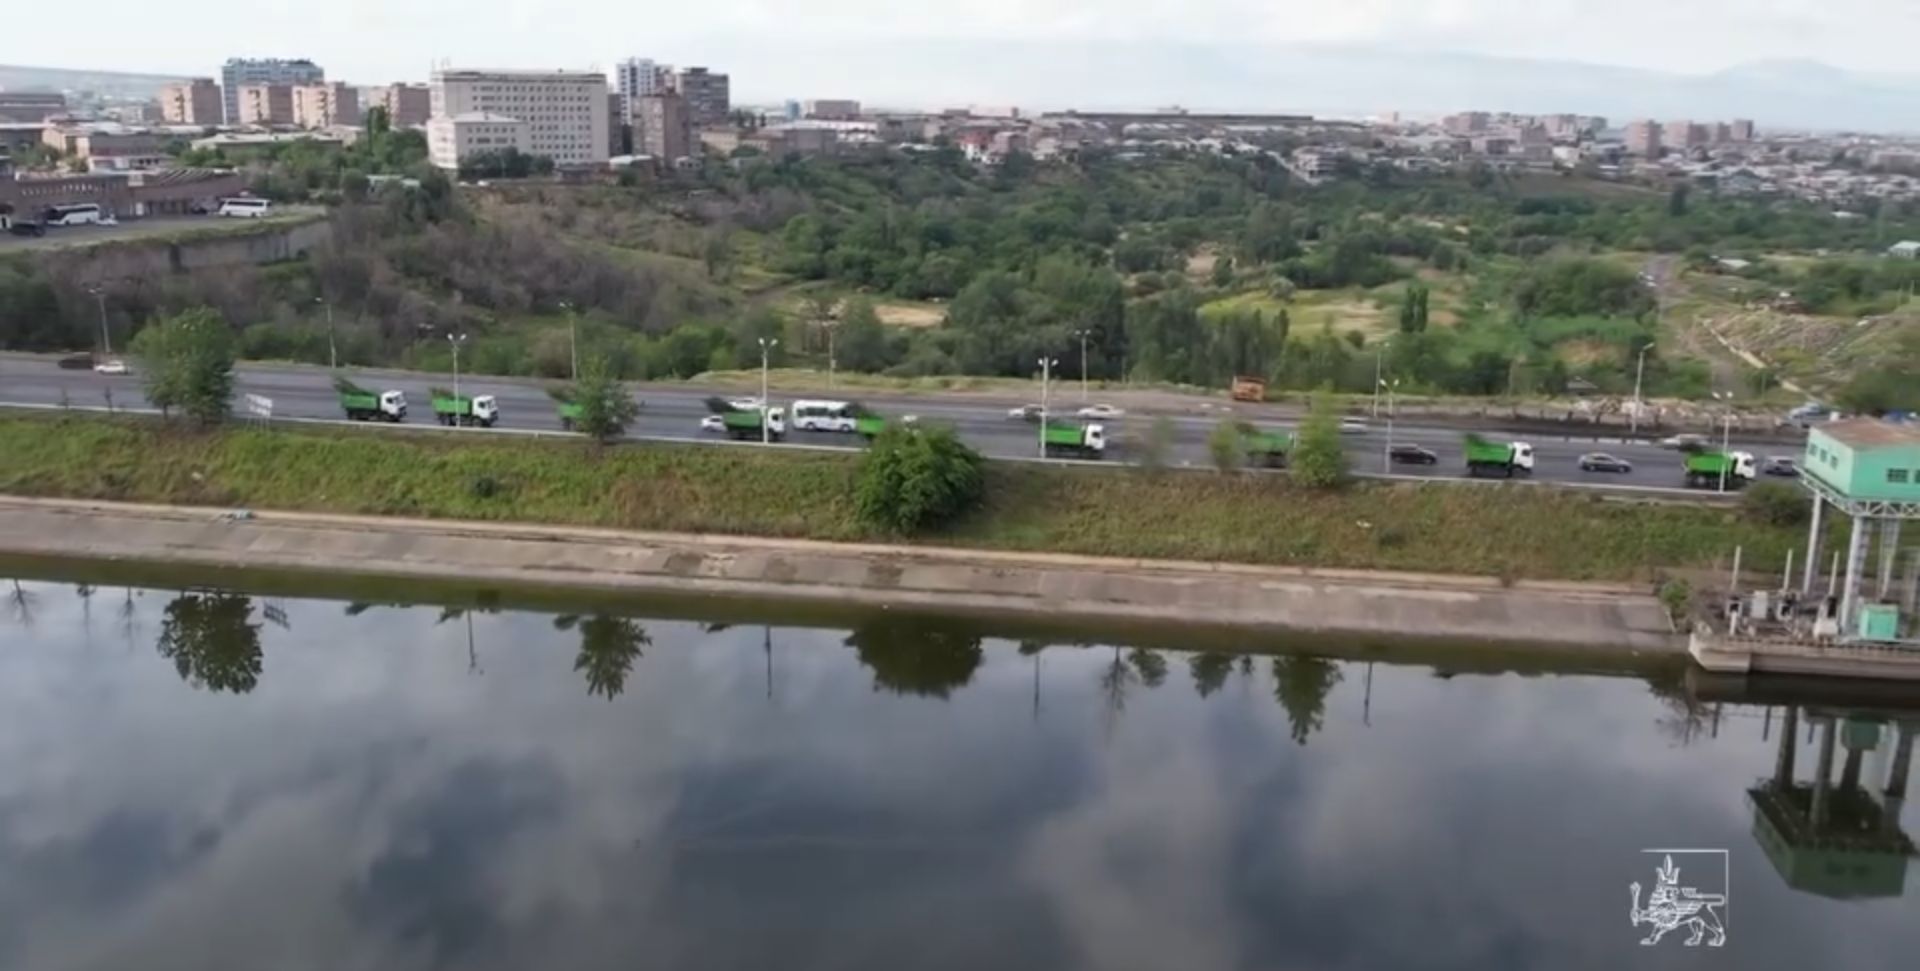 Երևանյան լճի հարակից տարածքը կառանձնանա կանաչապատման նոր լուծումներով. քաղաքապետարան (տեսանյութ)